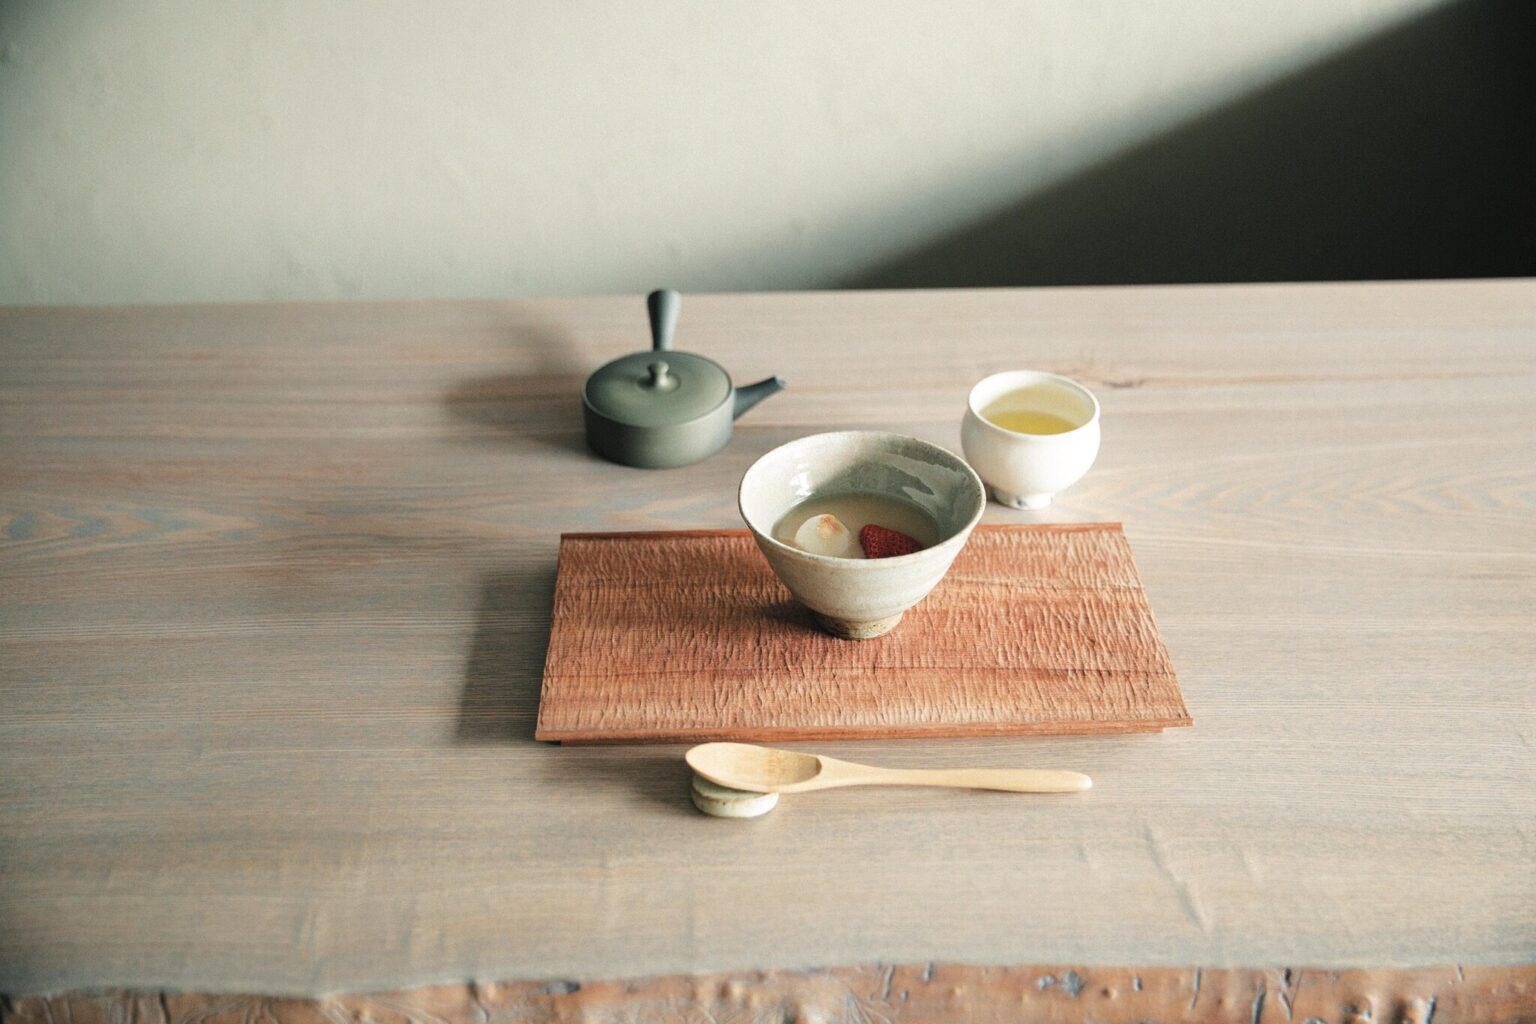 日本茶が、人をつなぐ。茶せんを使ってその場で点てたお抹茶にミルクを注ぐ、香り高い抹茶ラテのティースタンド〈YUGEN〉。その斬新さは瞬く間に話題に。